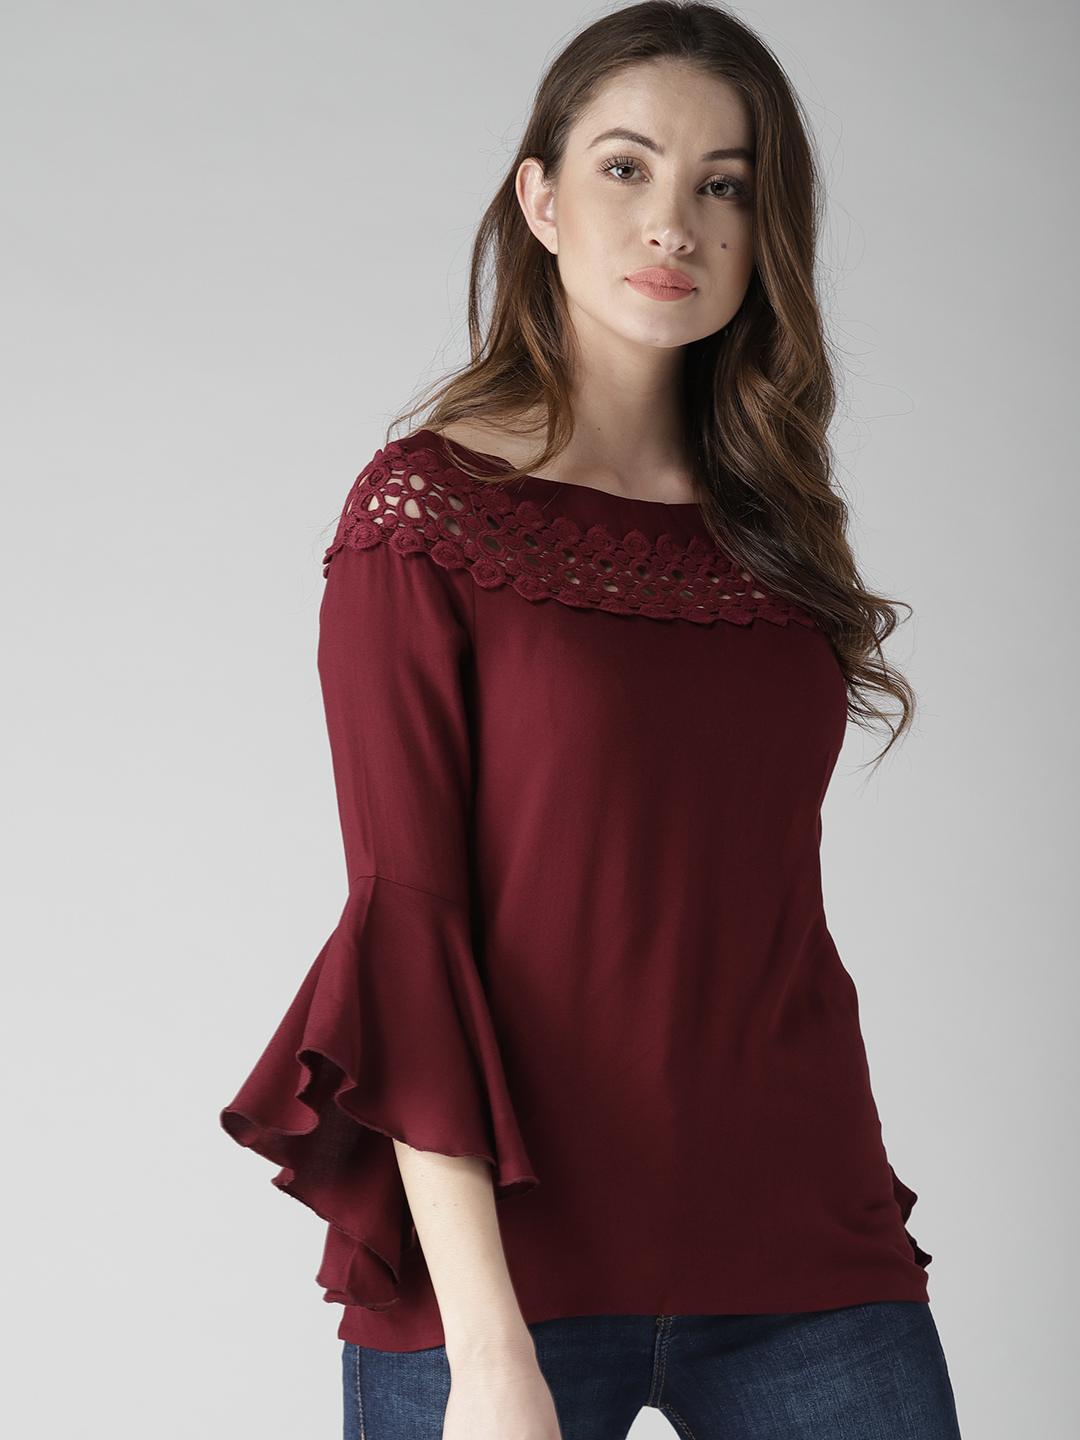 Raabtaa Fashion Casual Plain Maroon Rayon Basic Full Sleeves Top For Women